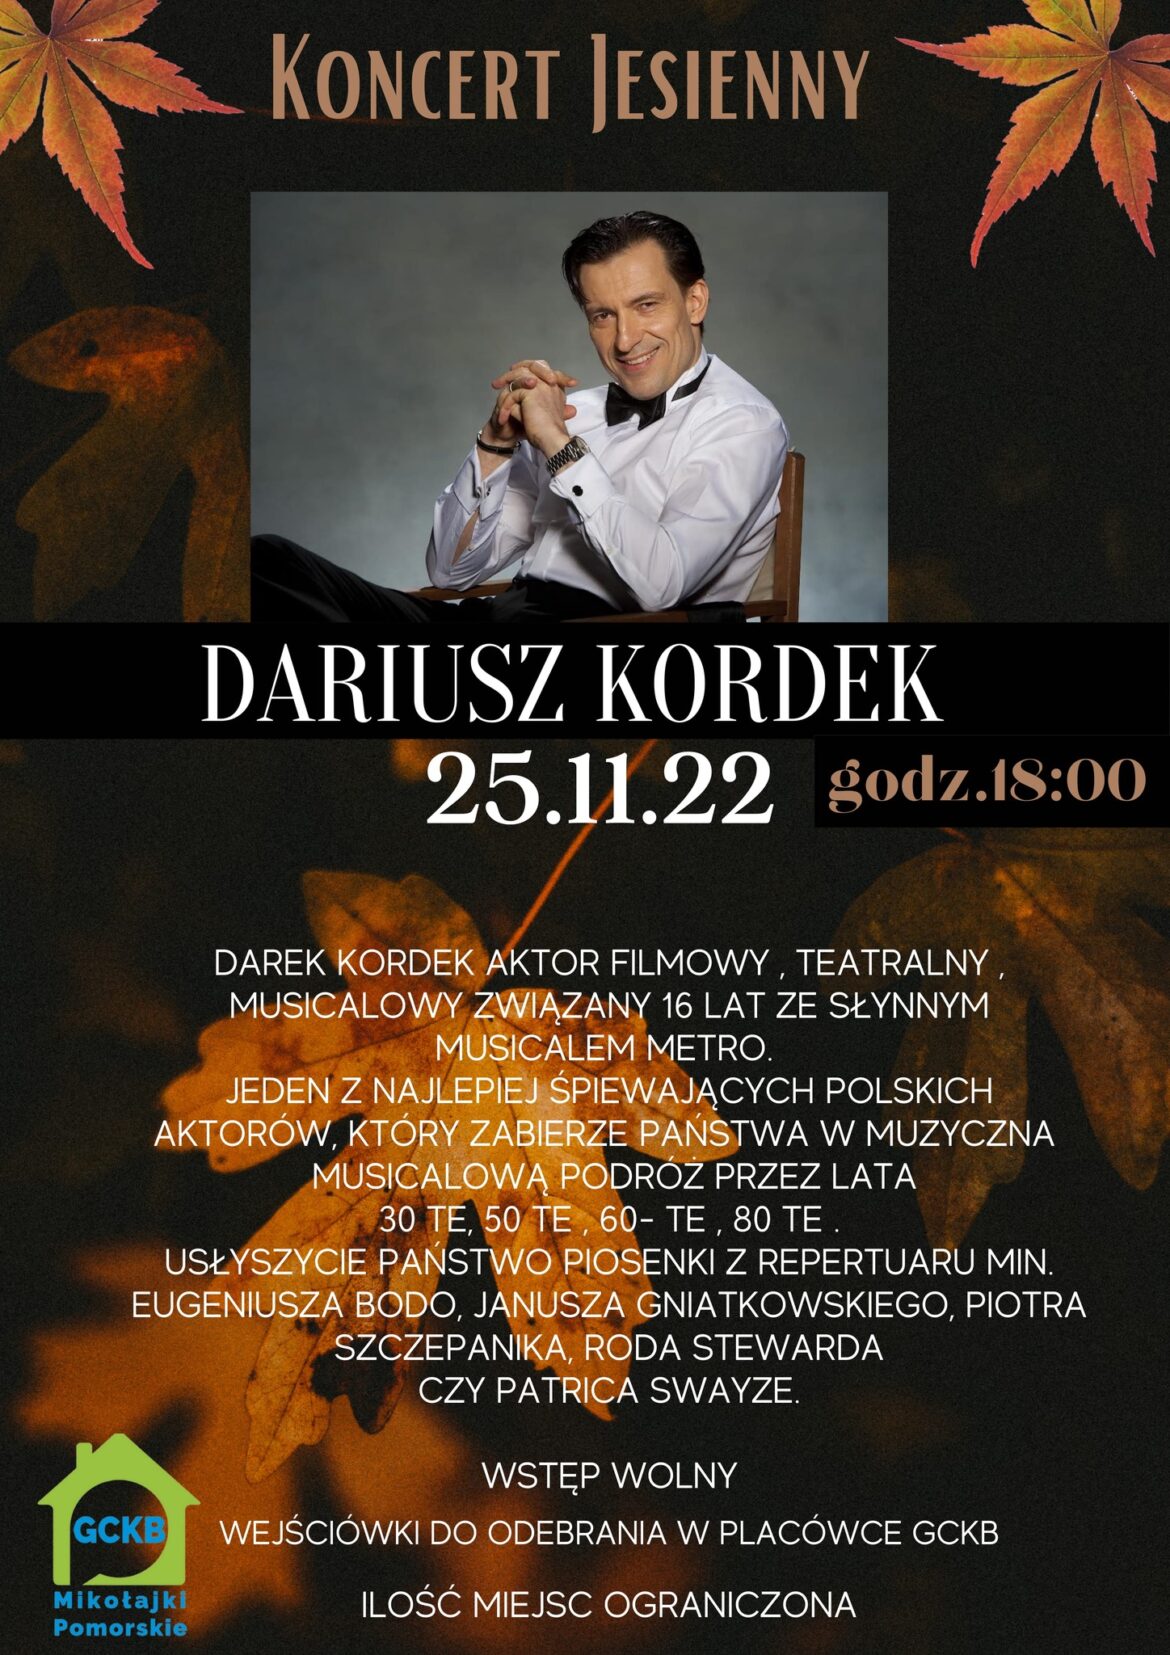 Wójt Mikołajek Pomorskich Maria Pałkowska-Rybicka zaprasza na „Jesienny koncert” Dariusza Kordka